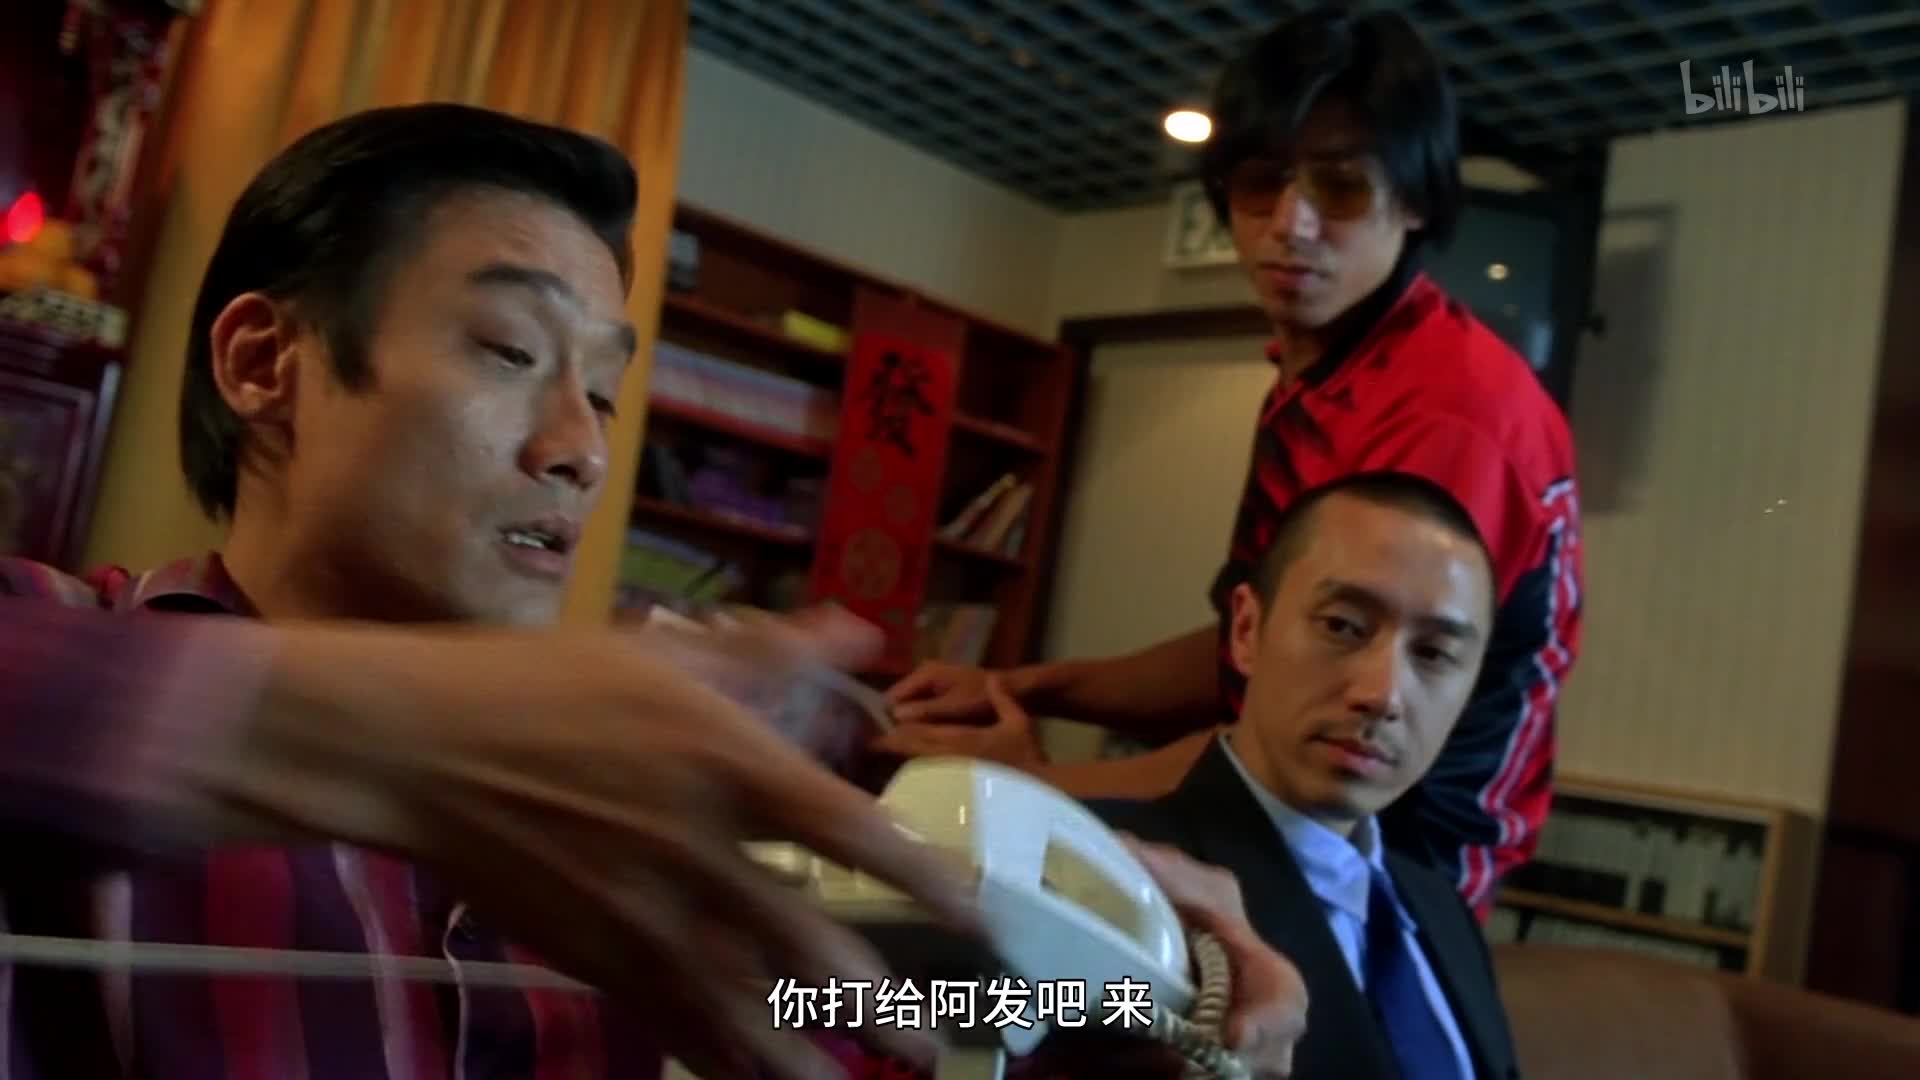 江湖告急(Jiang Hu - The Triad Zone)-HK Movie 香港電影